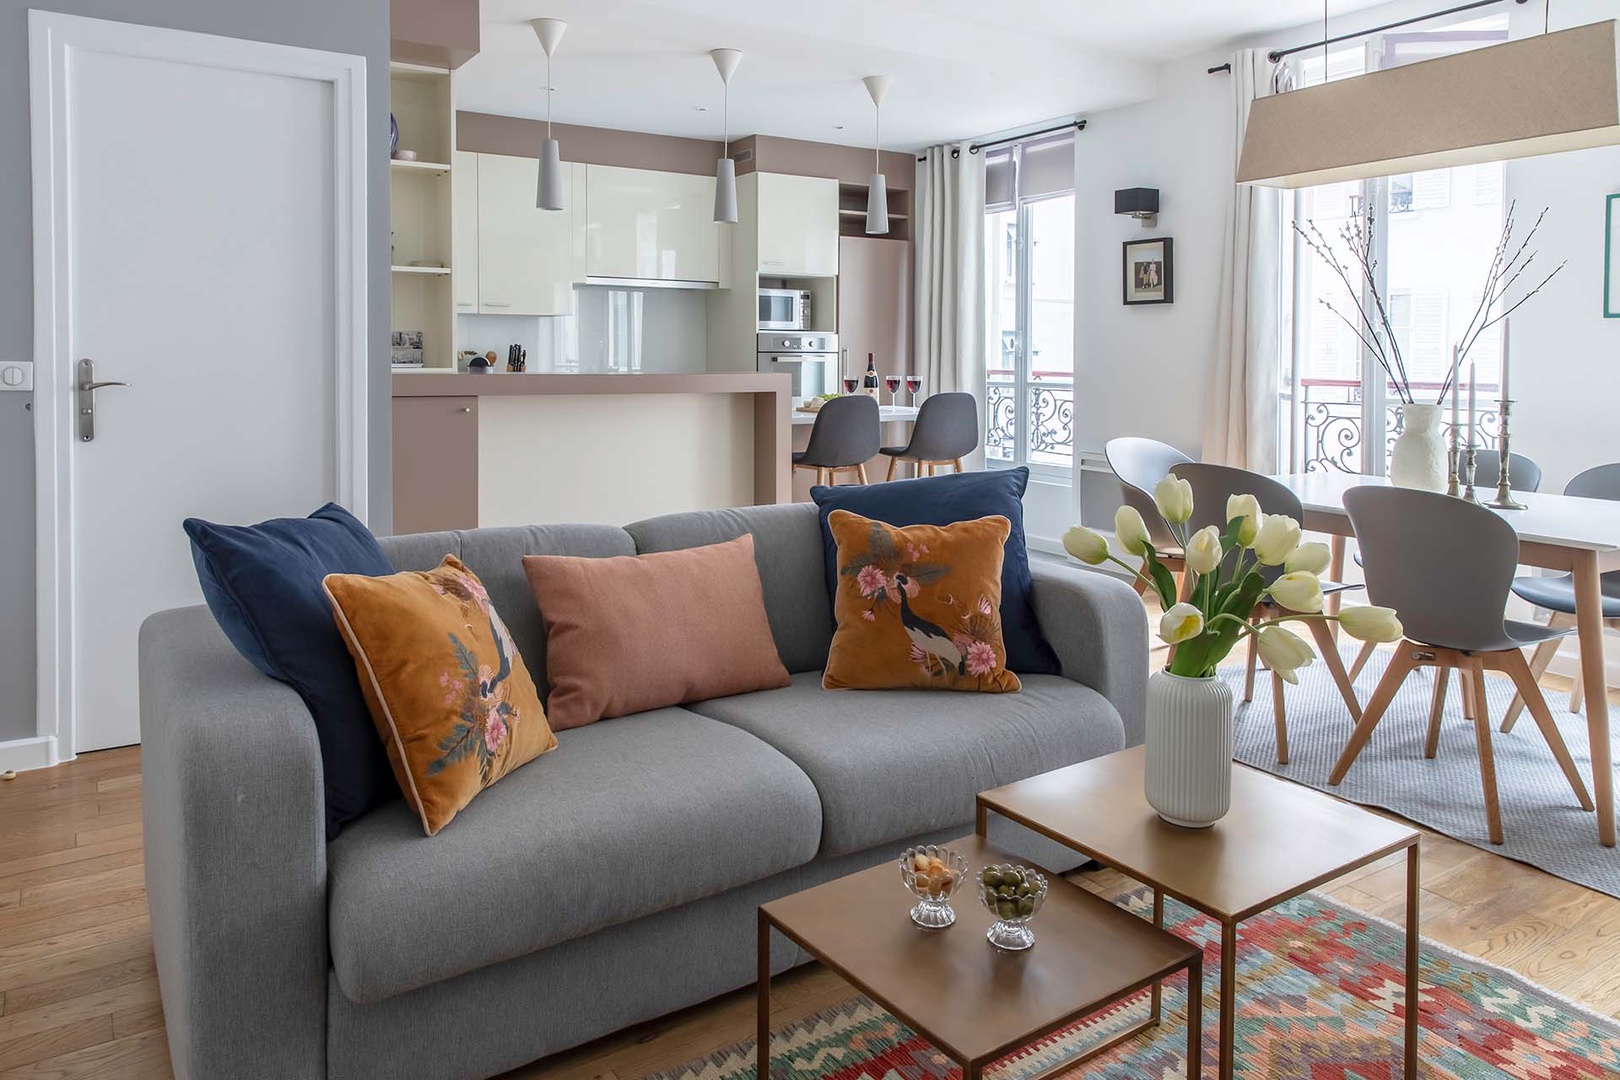 Elegant contemporary furniture decorates the living space.